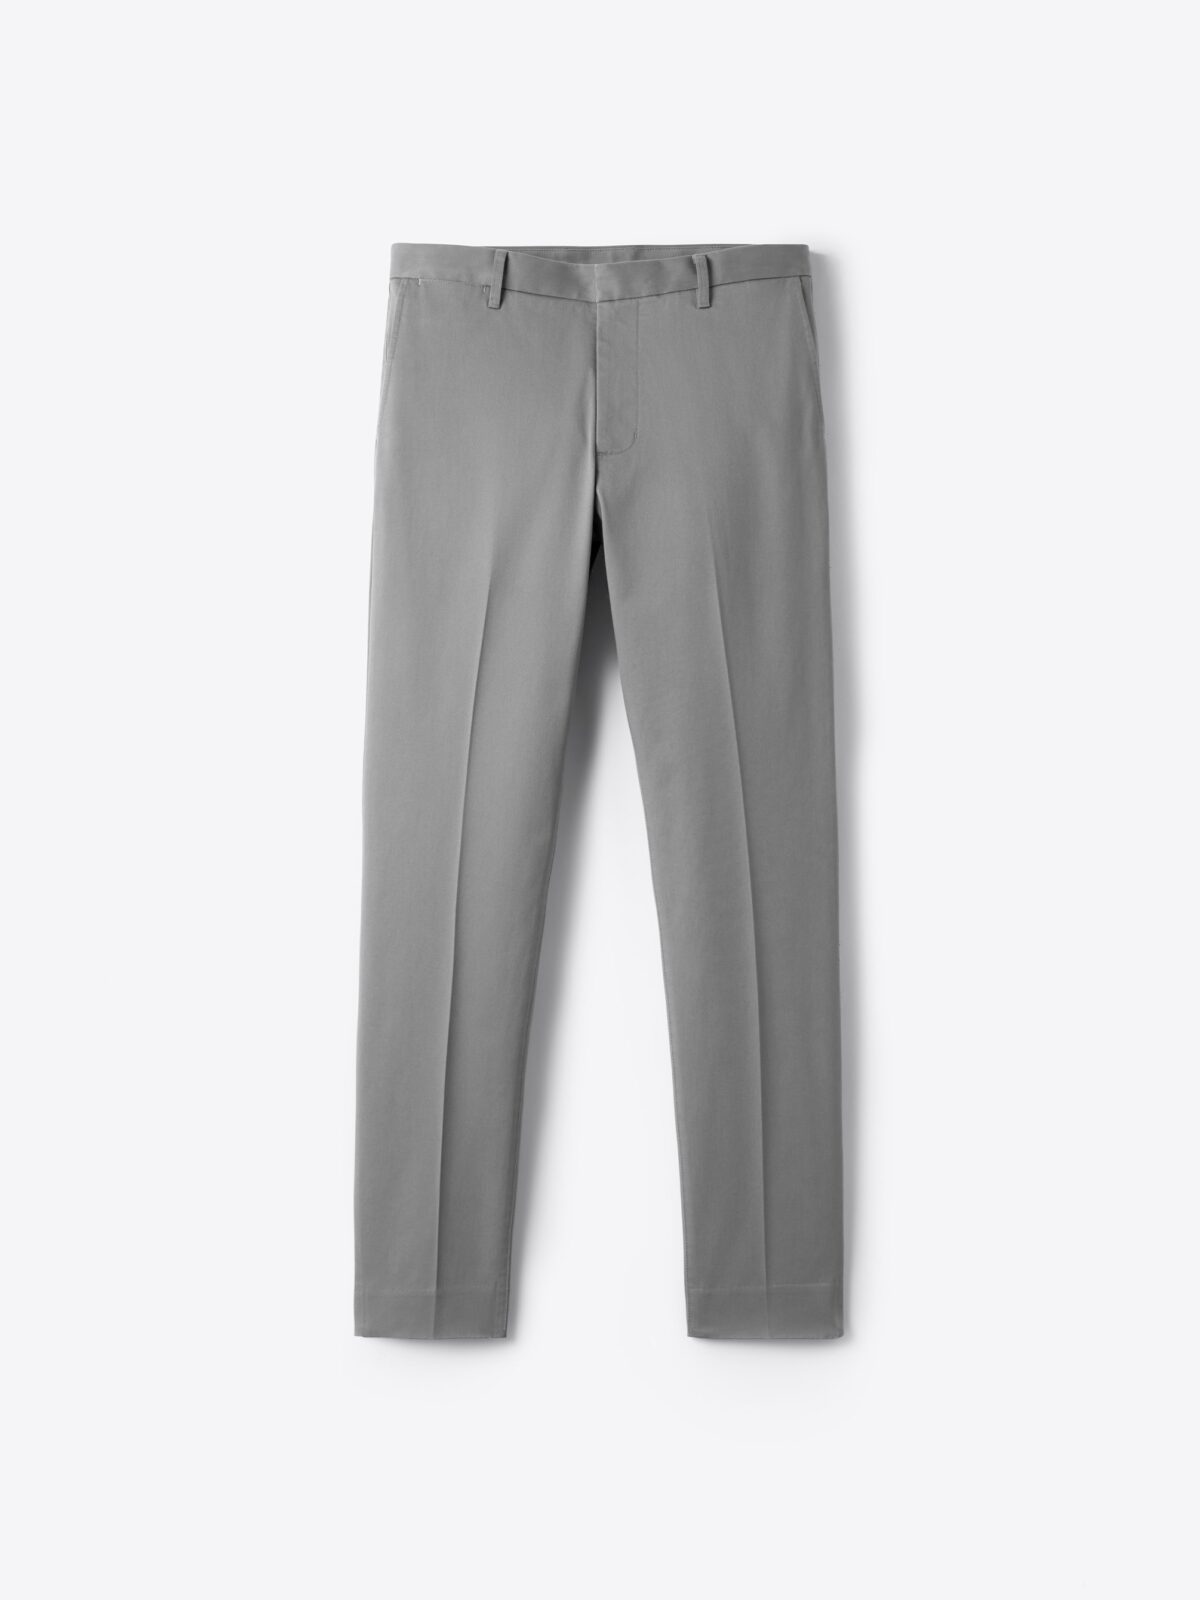 H&M Men's Fall 2019 Pants Style Guide  Mens pants fashion, Mens outfits,  Korean fashion men